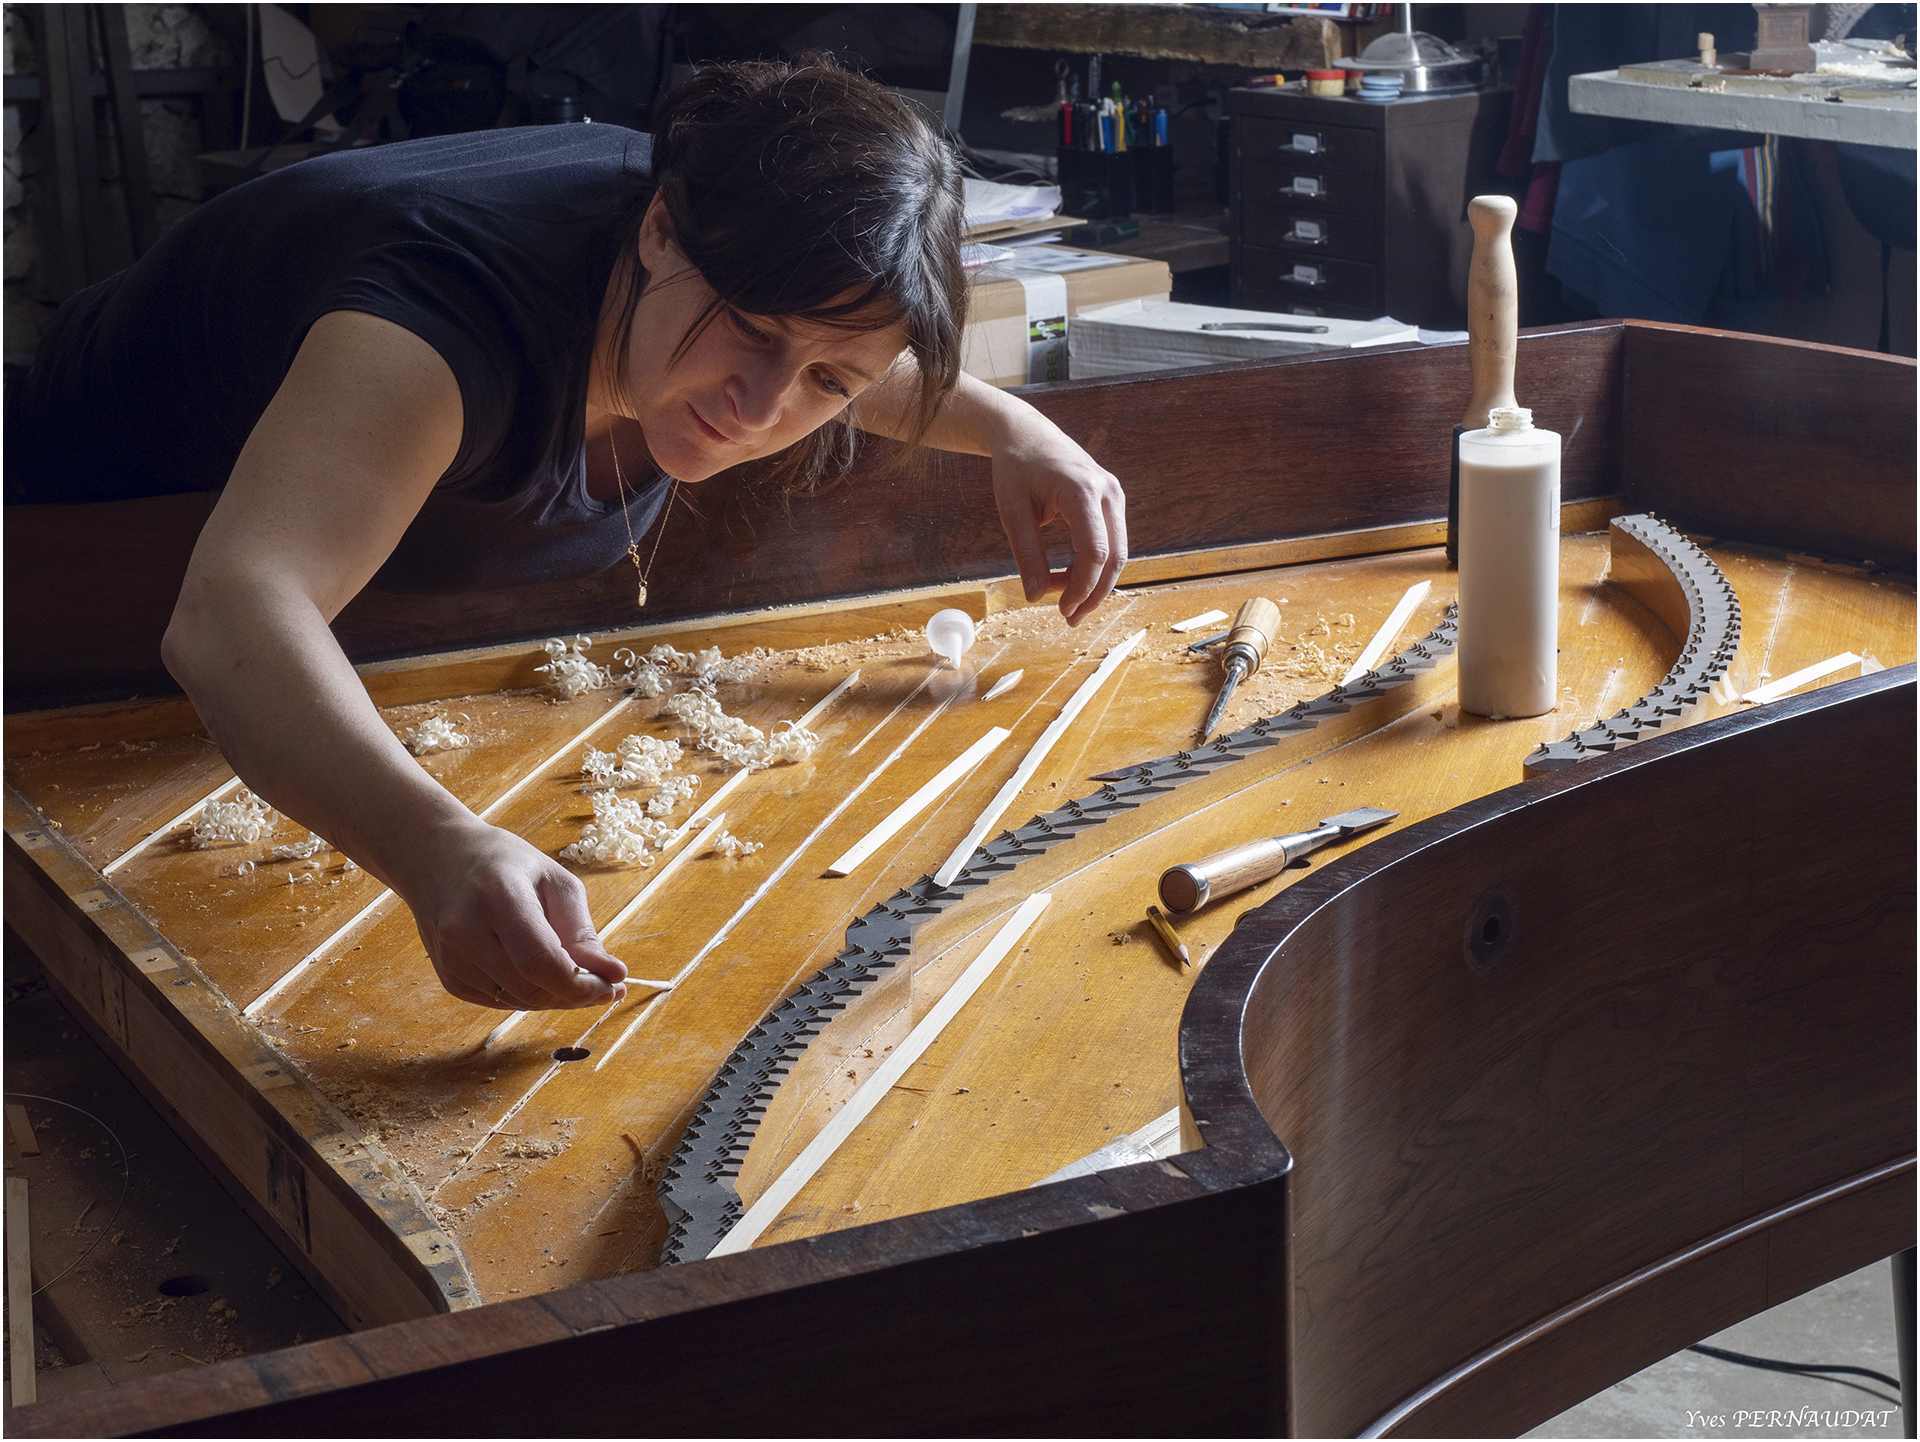 restaurationde table d'harmonie de piano demi queue Pleyel 2m04 de 1899 dans atelier de restauration de pianos de Marion Lainé en Savoie